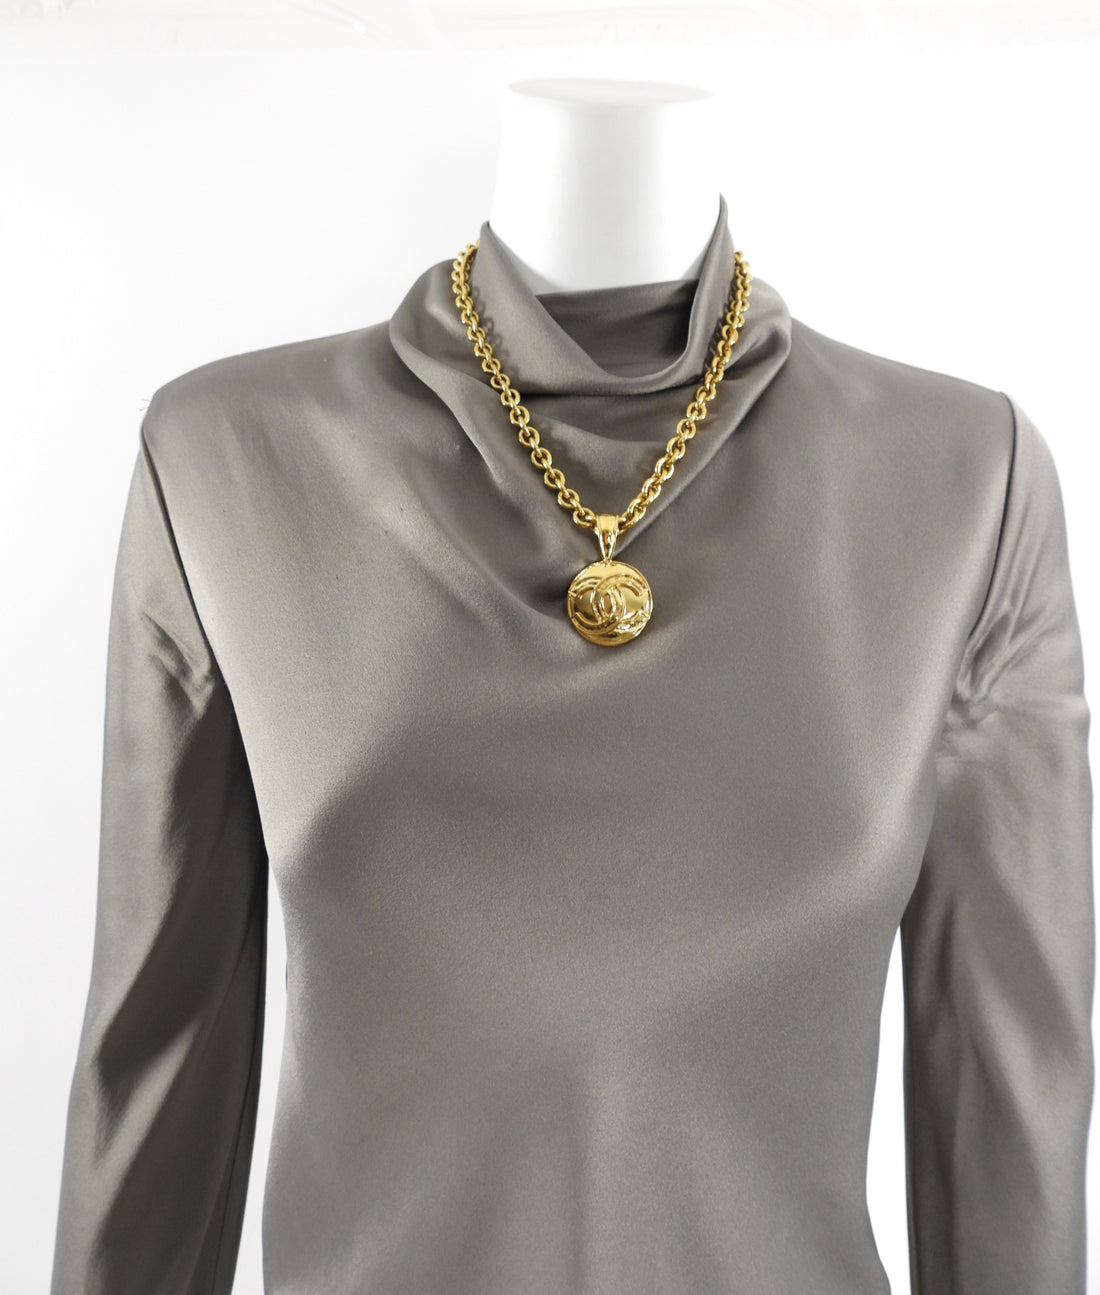 Antique Gold & Red Vintage Chanel Button Pendant Necklace — singulié